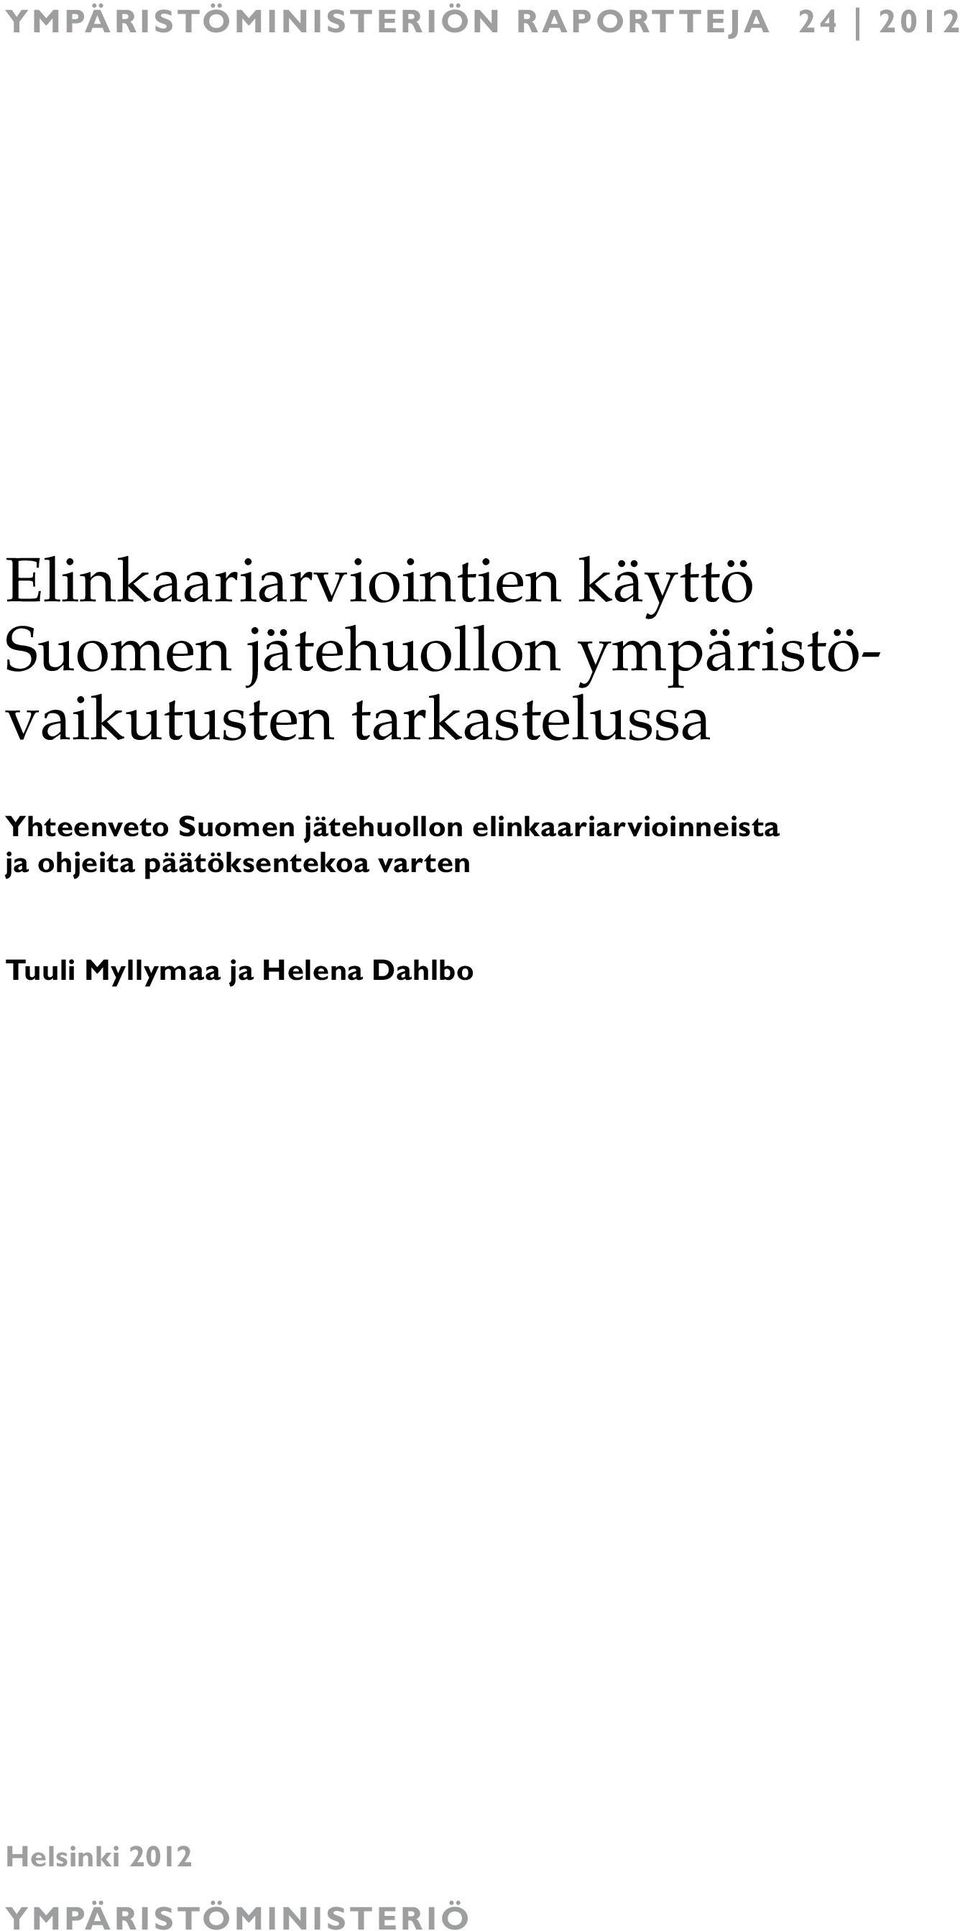 Suomen jätehuollon elinkaariarvioinneista ja ohjeita päätöksentekoa